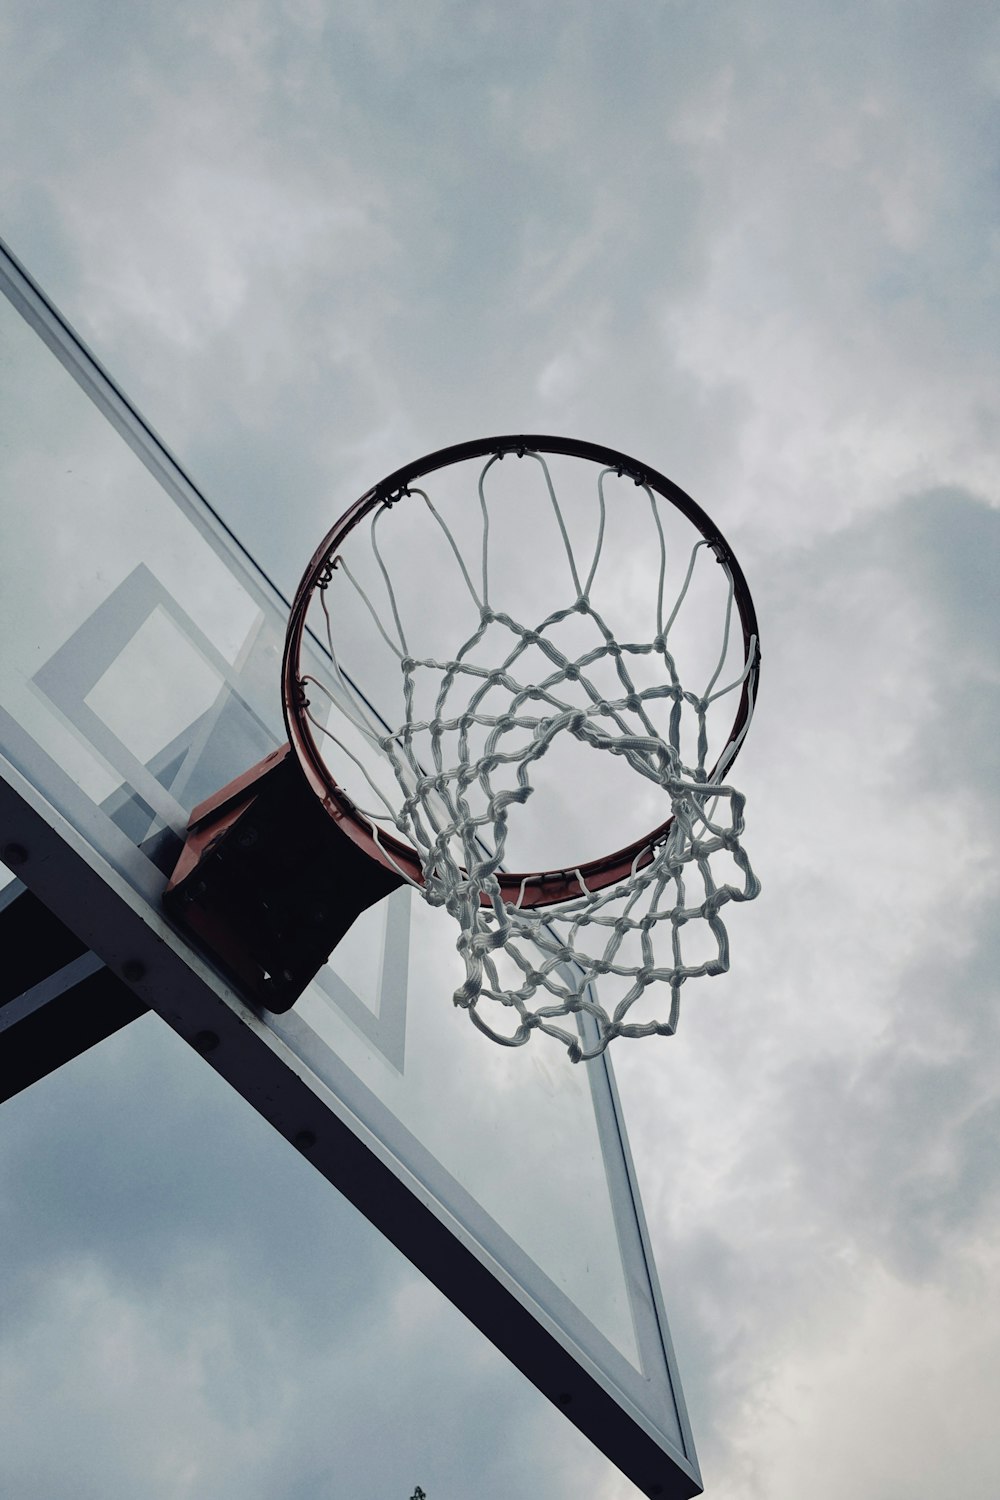 una pelota de baloncesto pasando por el aro de una cancha de baloncesto